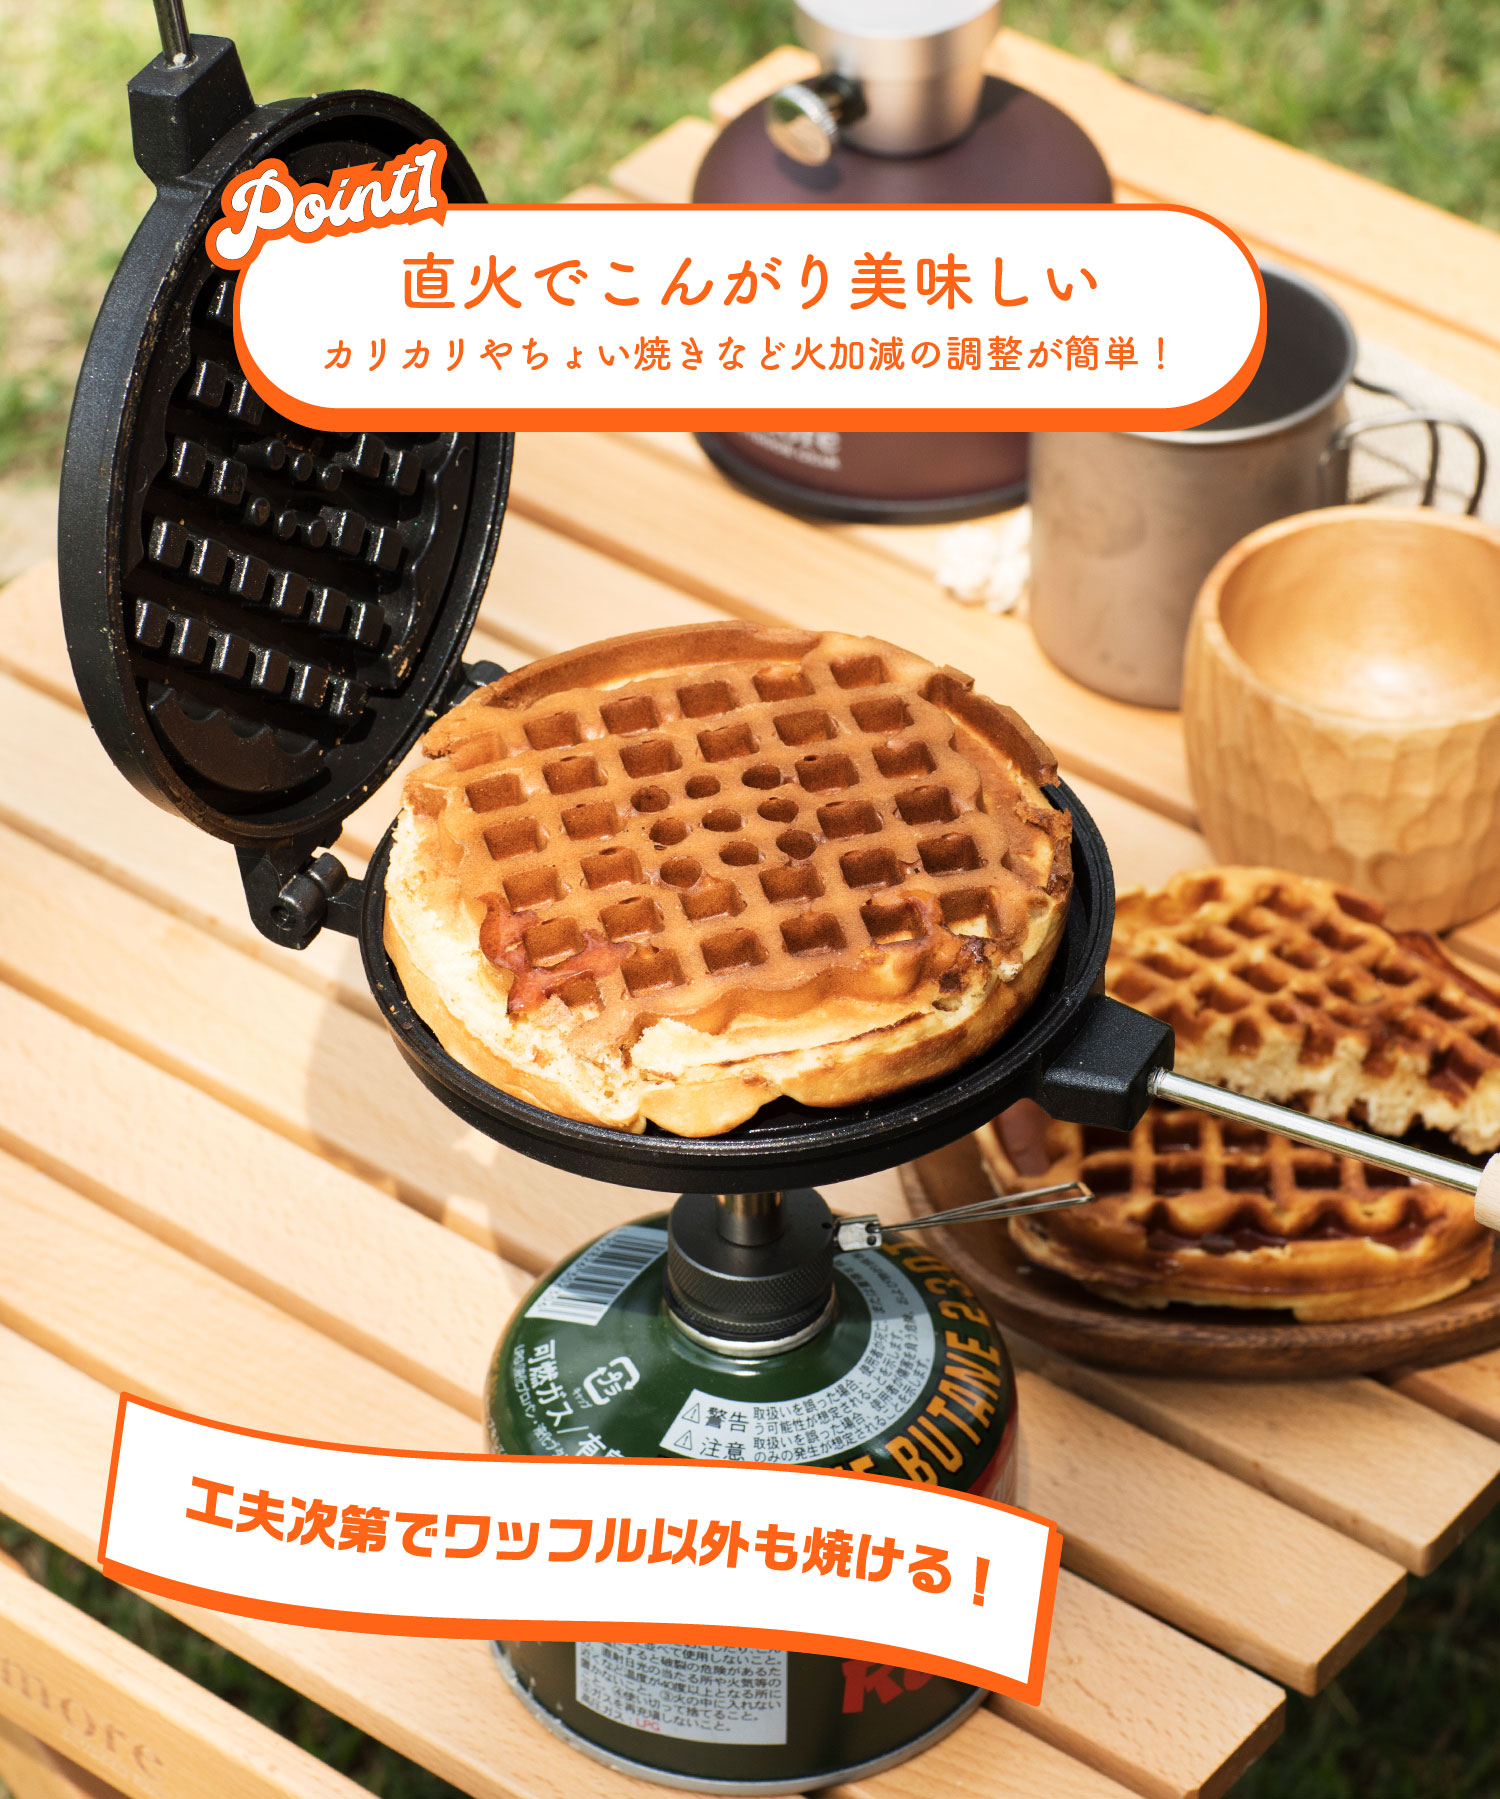 スモア ワッフルメーカー S'more waffle